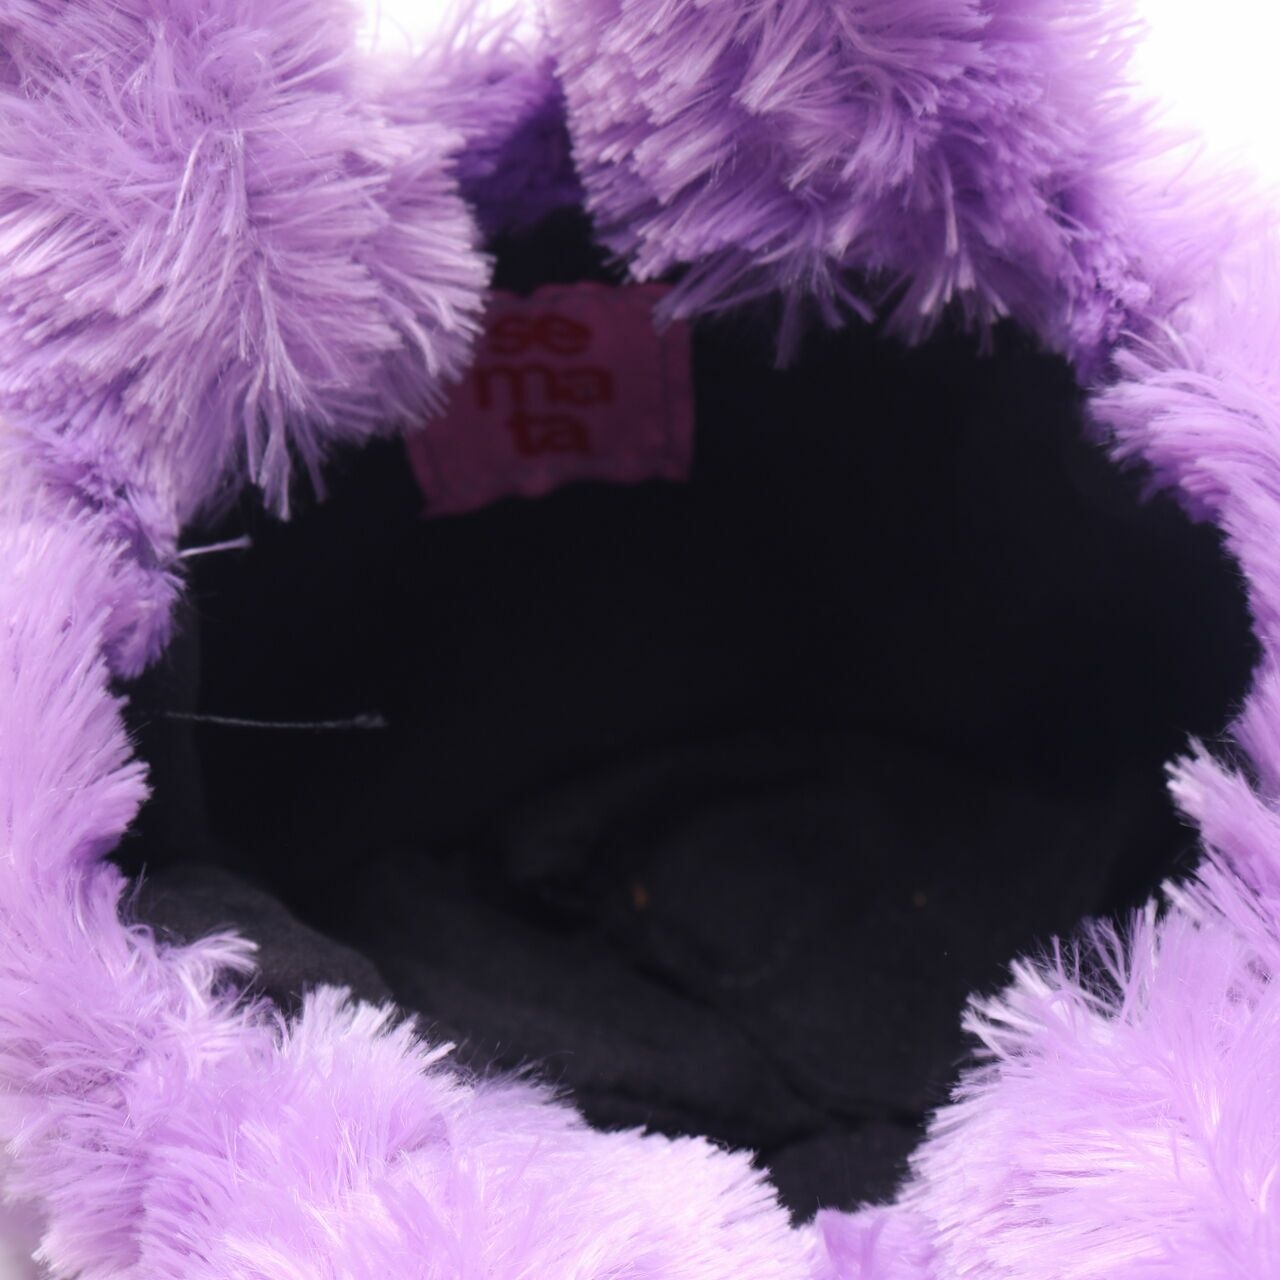 Semata Purple Faux Fur Handbag